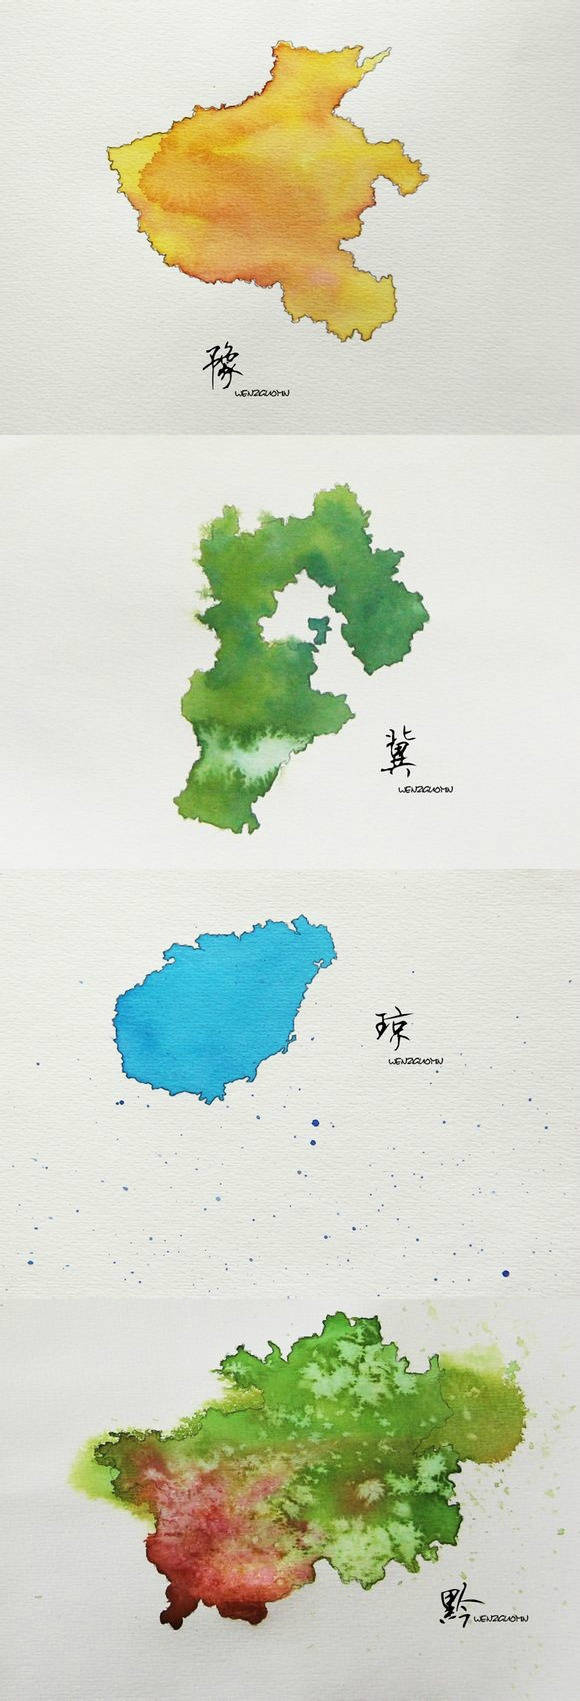 水彩画里的中国各省,你看见自己家乡了吗?